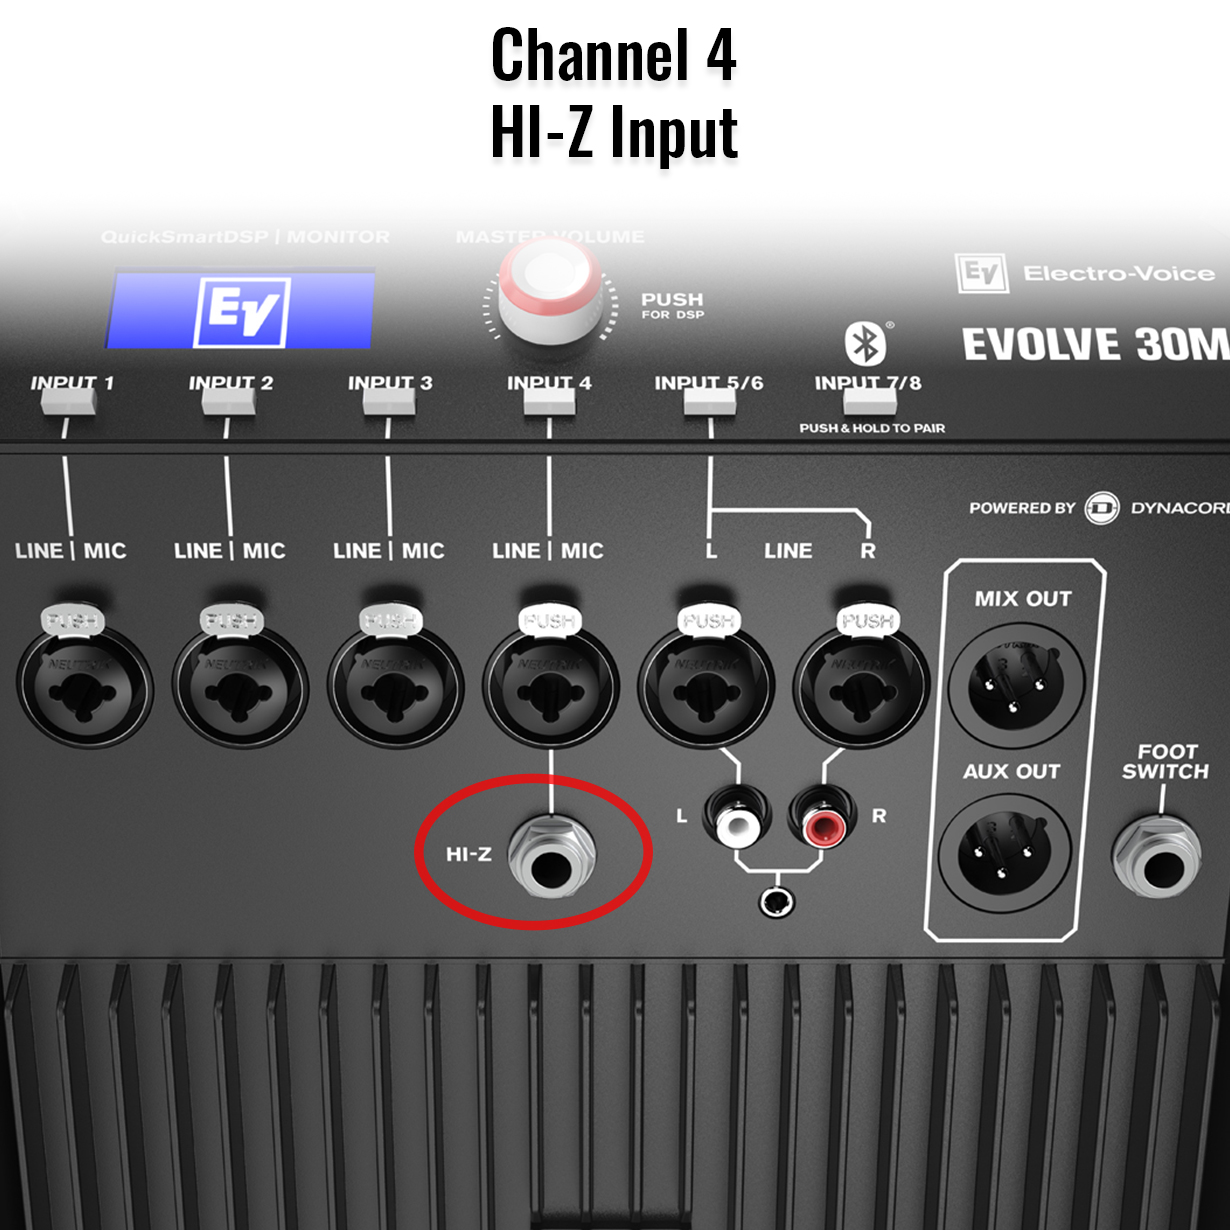 Electro-Voice Evolve 30M Mixer Channel 4 HI-Z Input